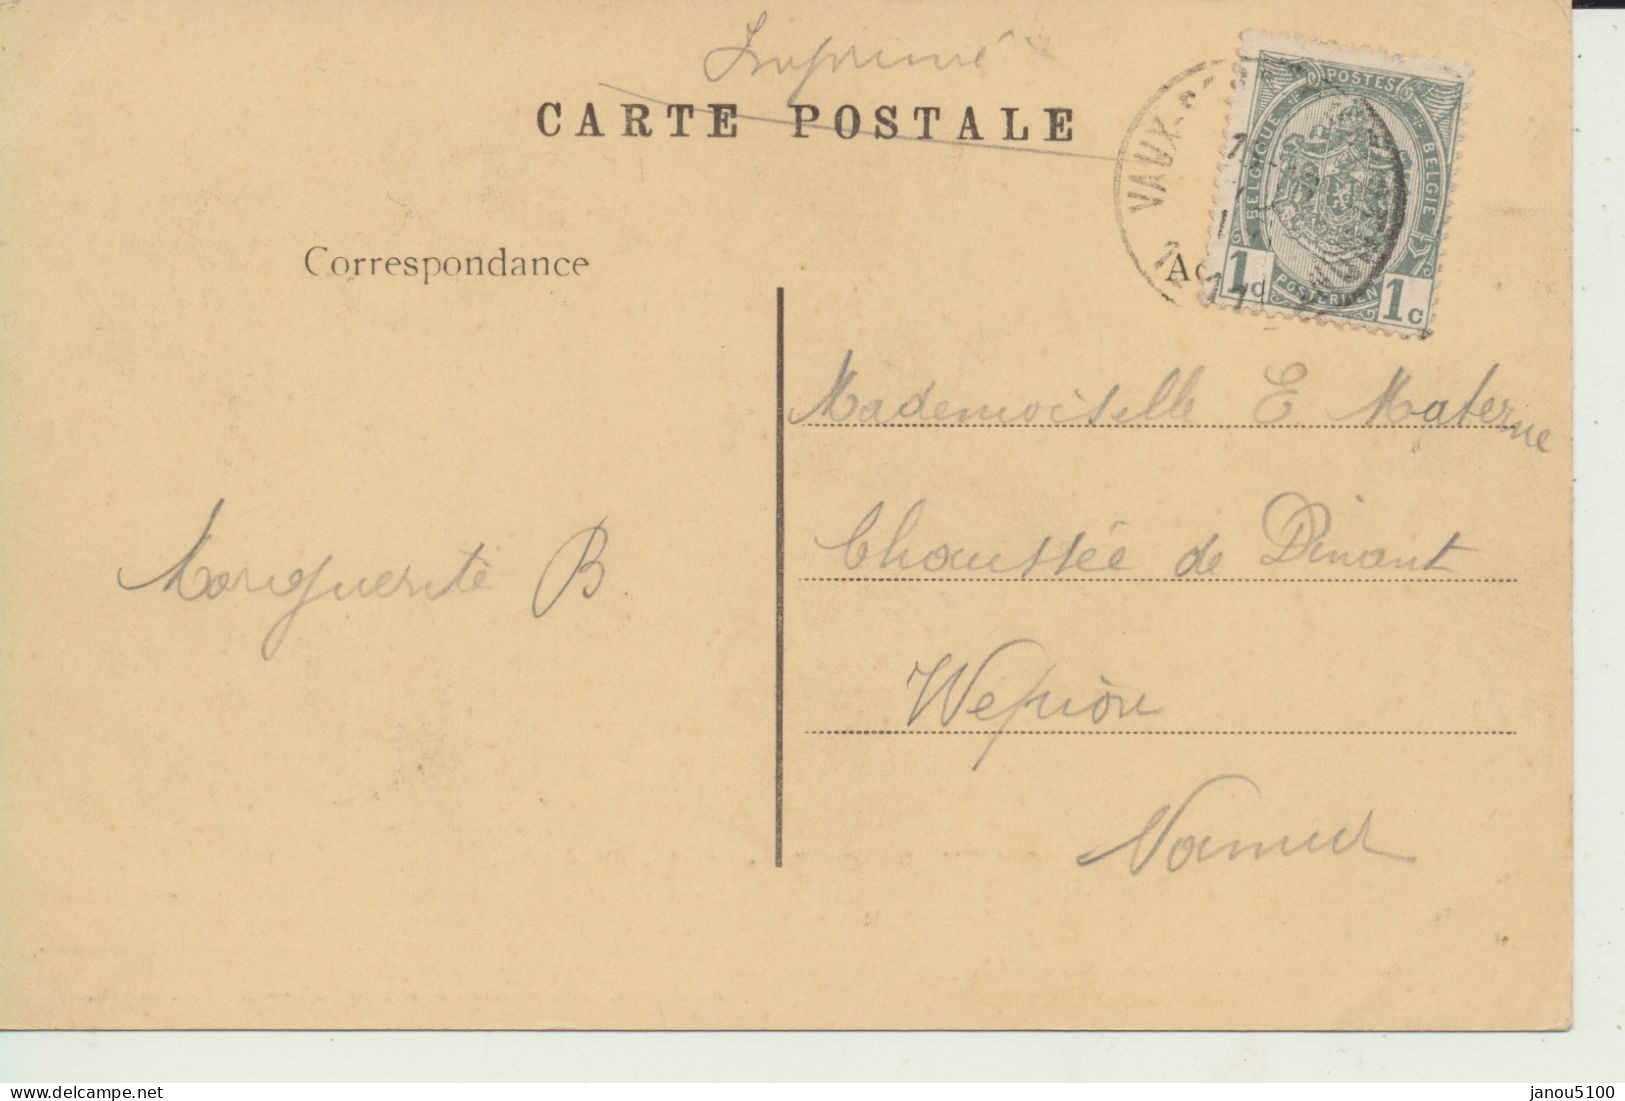 CARTES POSTALES   BELGIQUE    CHEVREMONT  ( PROVINCE DE LIEGE )     La CHAPELLE    1911. - Chaudfontaine